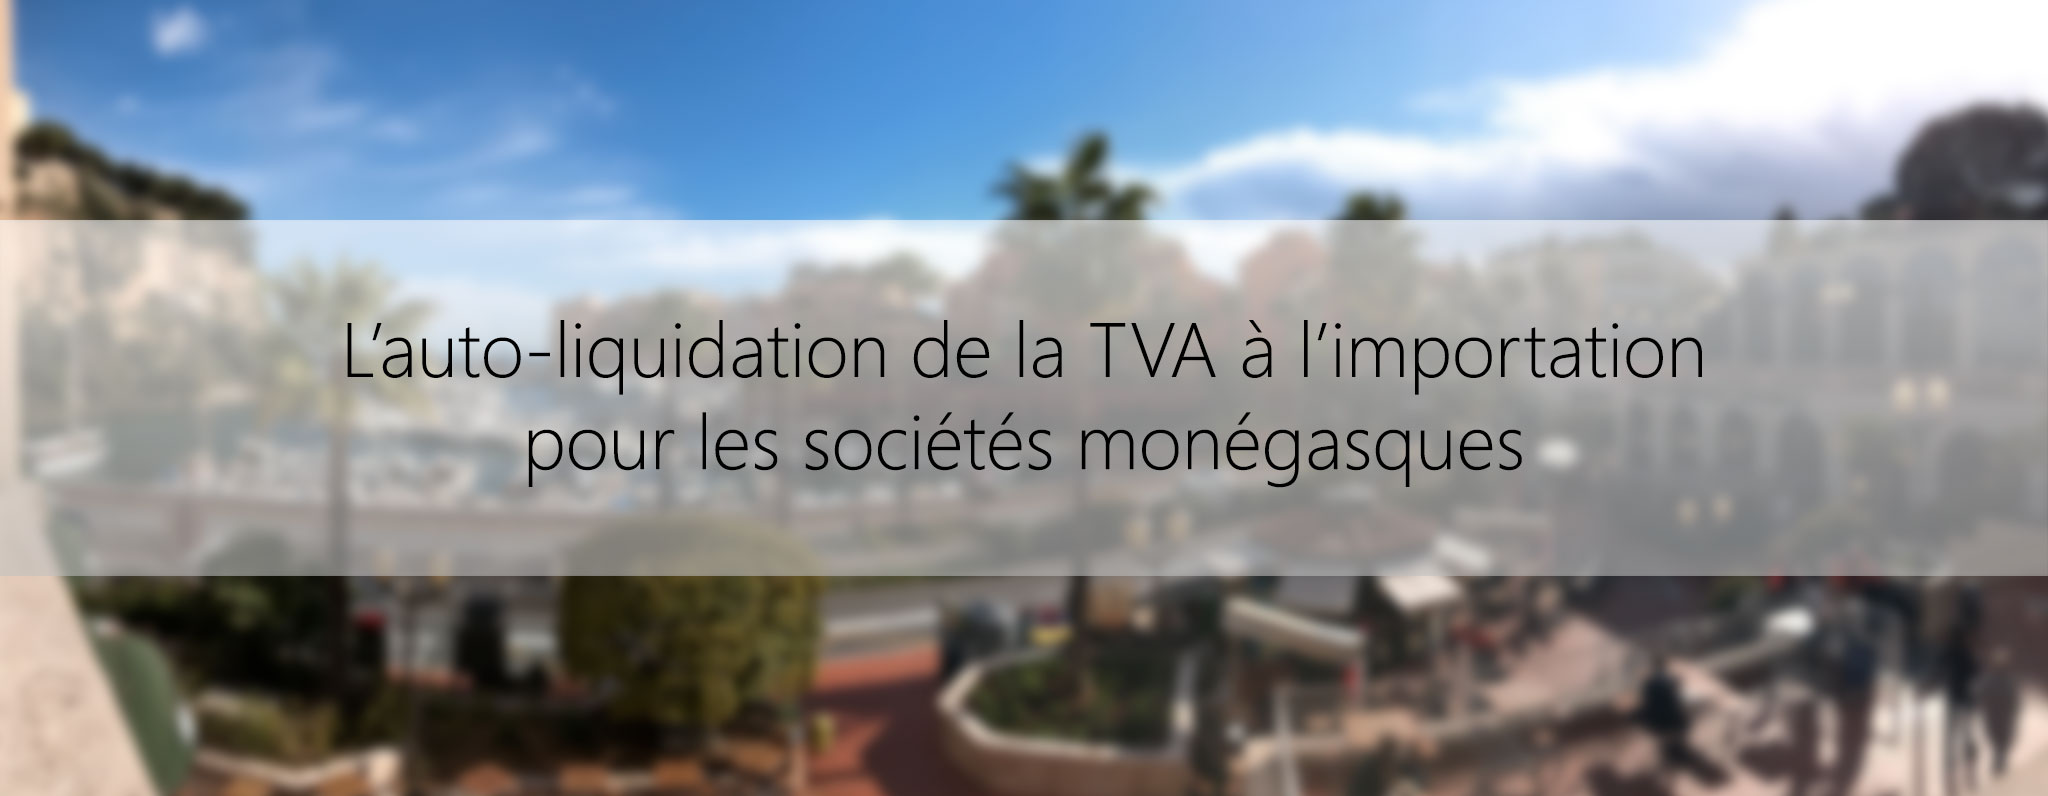 L'auto-liquidation de la TVA à l'importation pour les sociétés monégasques